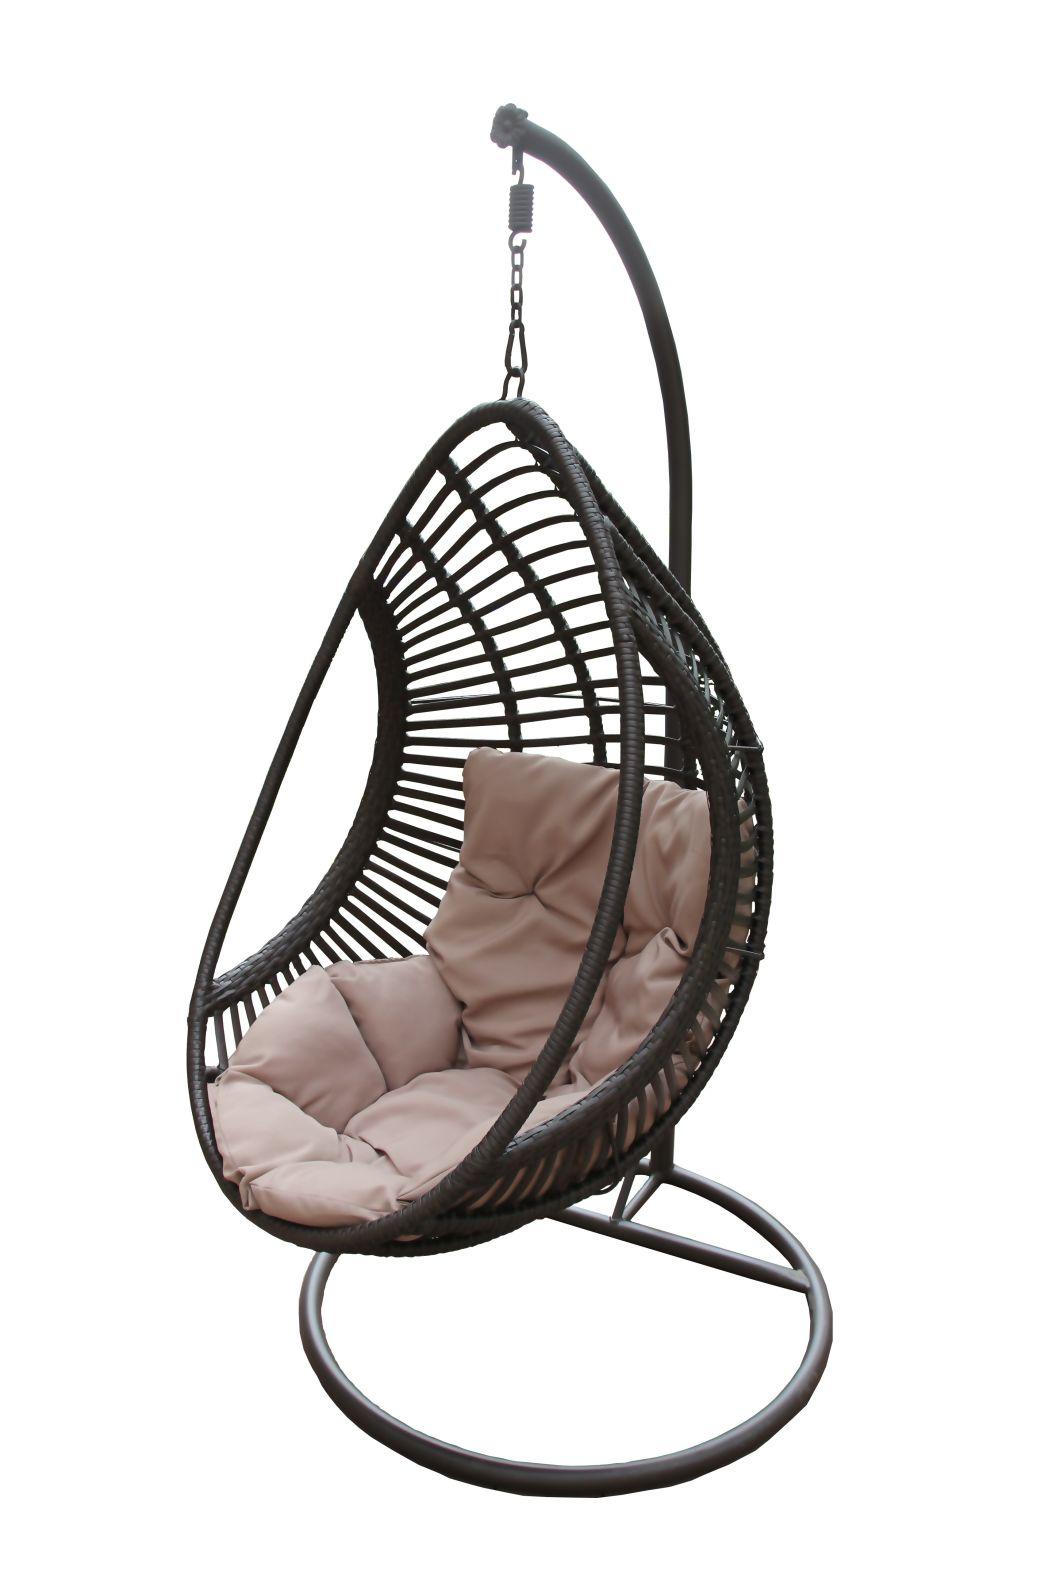 Patio Wicker Hammock Outdoor Garden Rattan Hanging Swing Egg Pod Chair